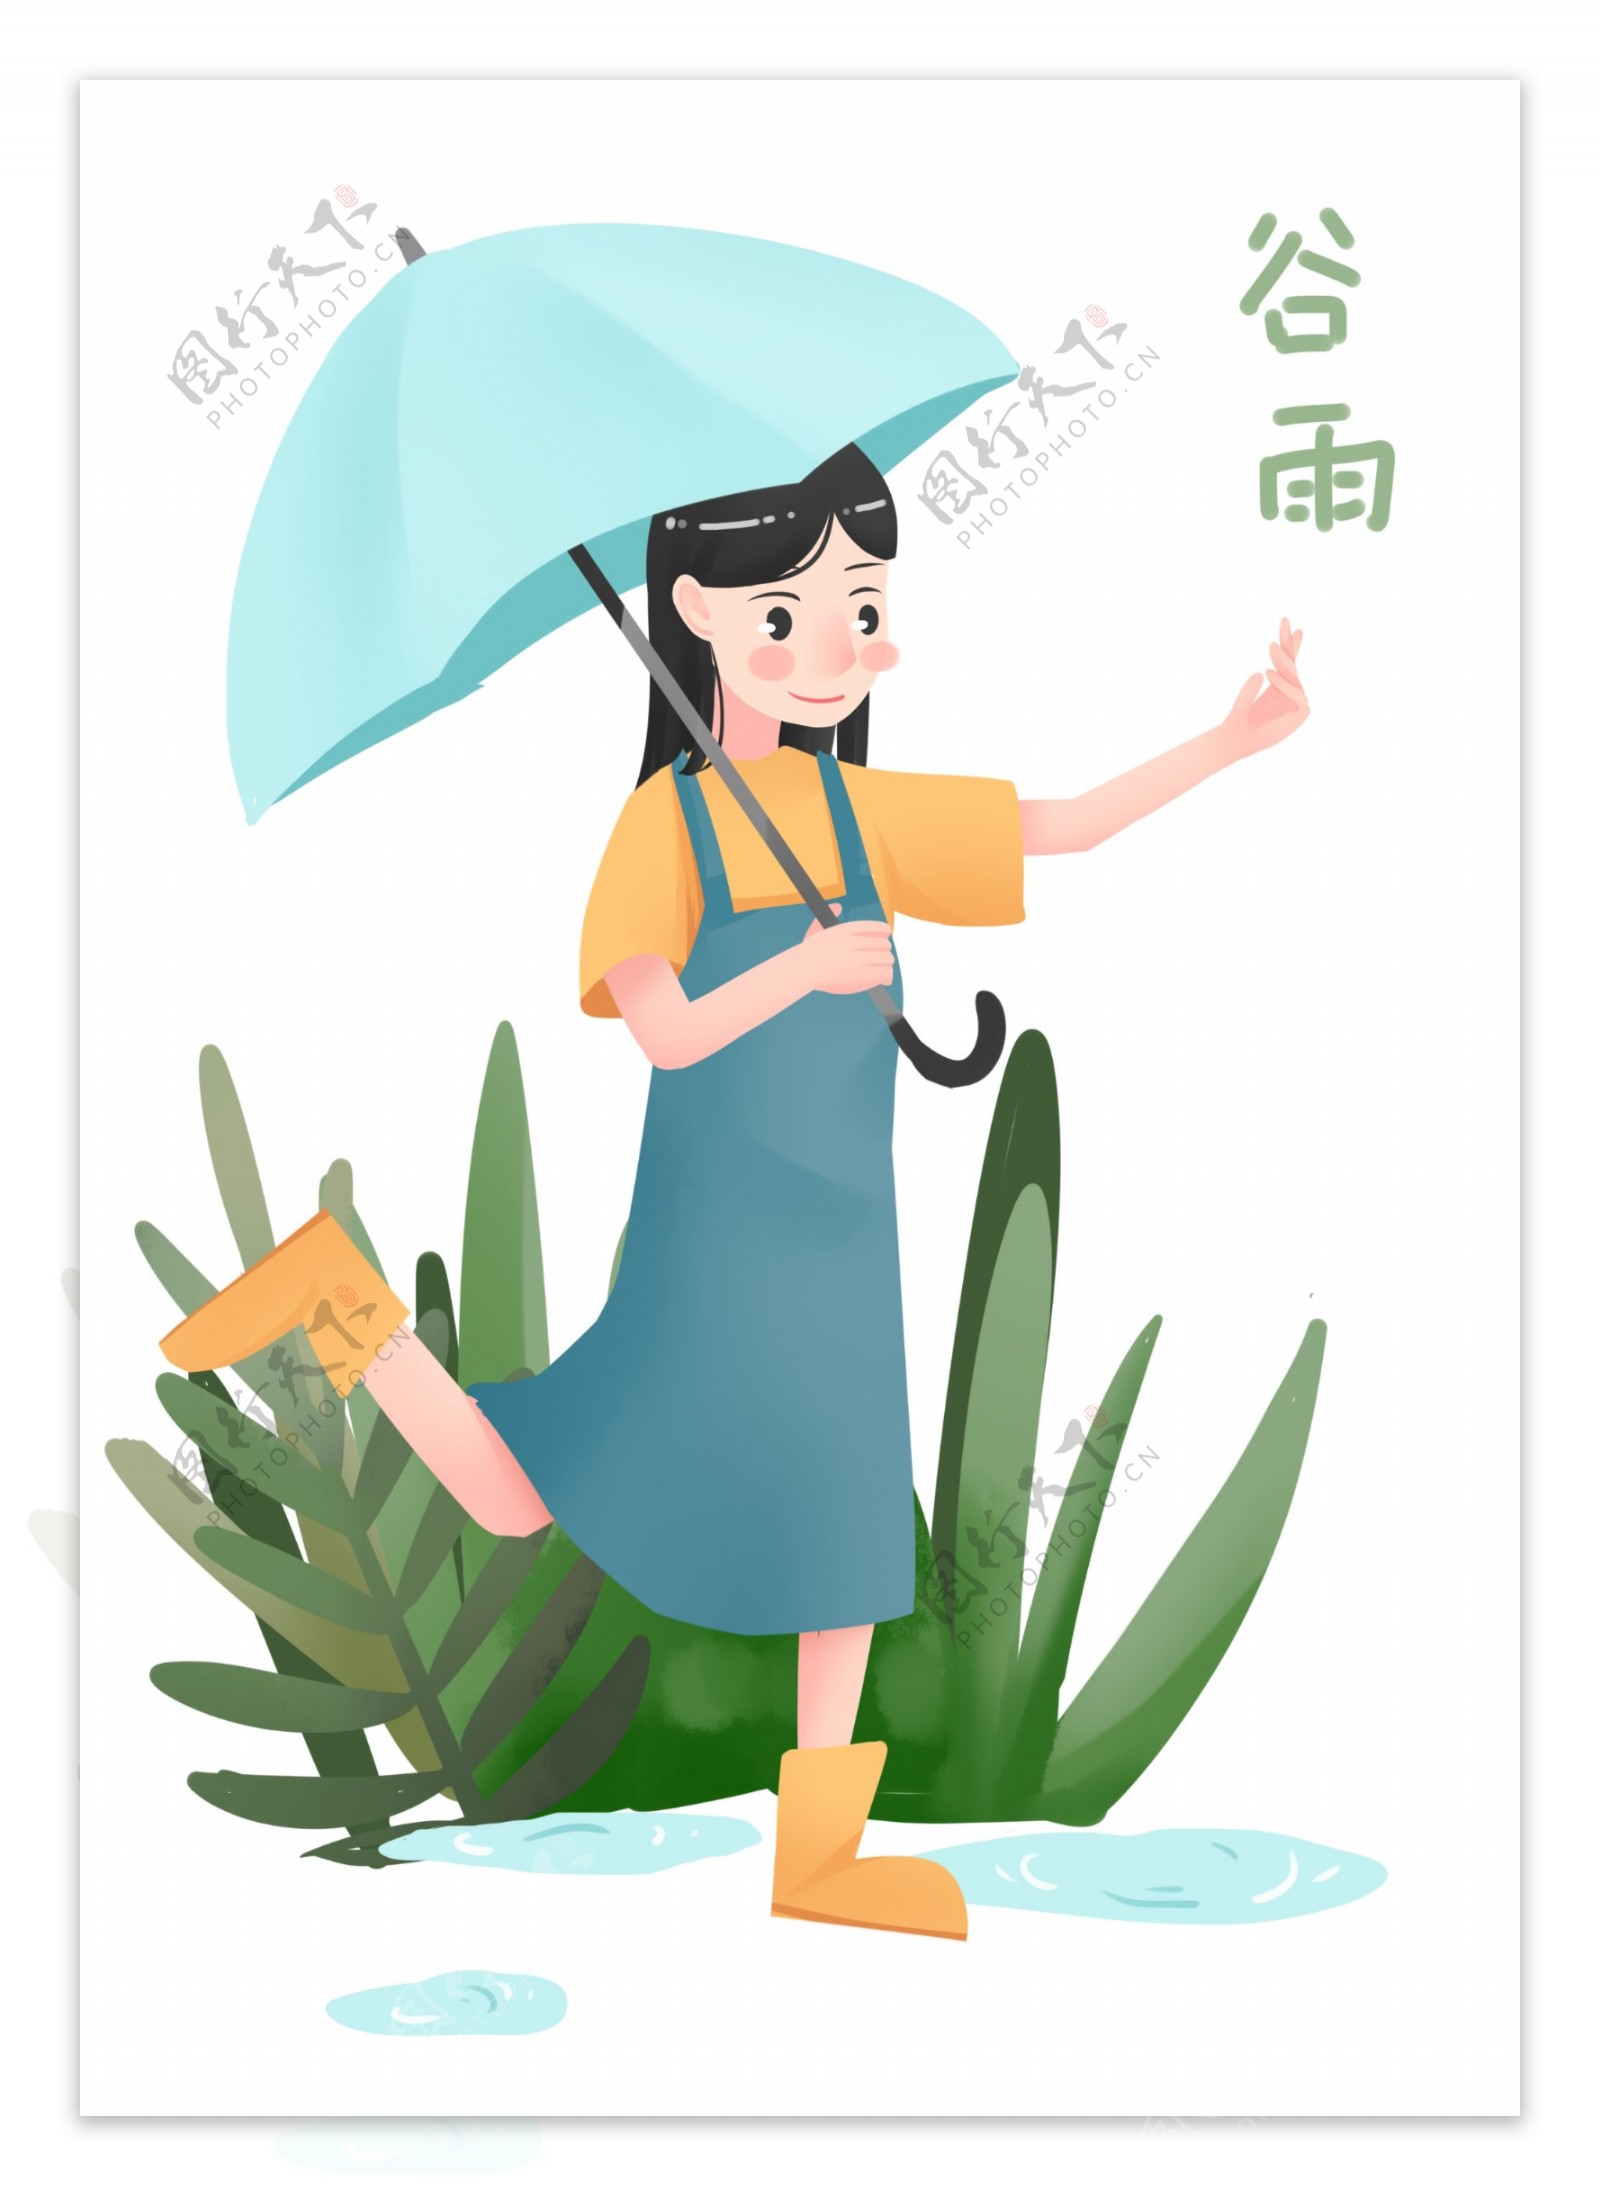 谷雨撑伞的小女孩插画